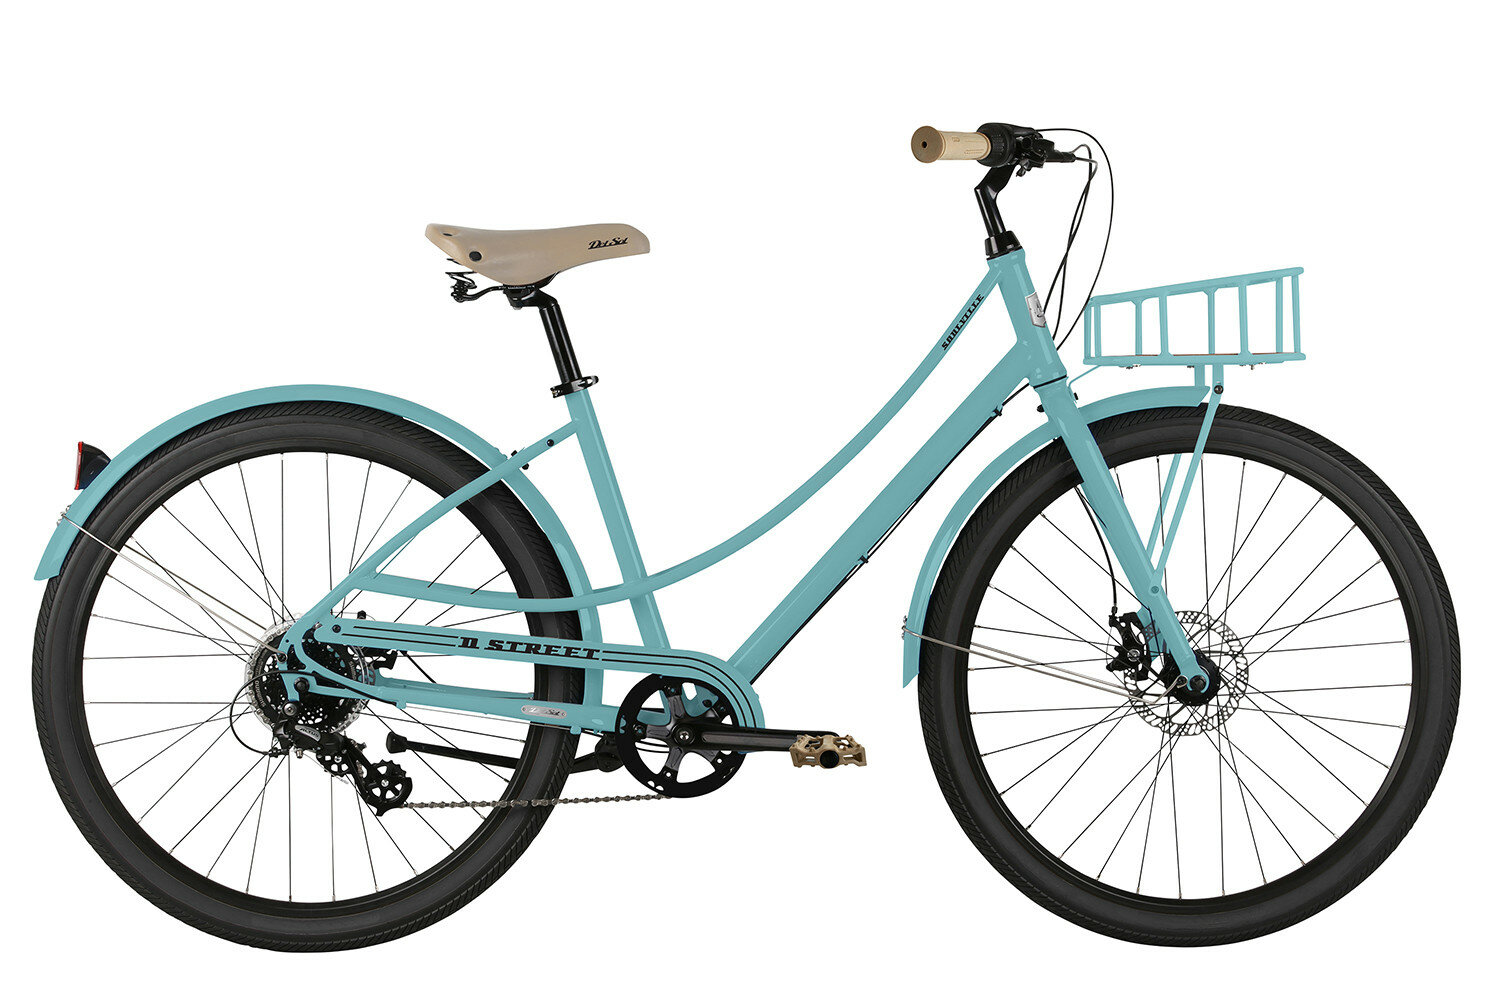 Городской велосипед Del Sol Soulville ST (2021) голубой 15"